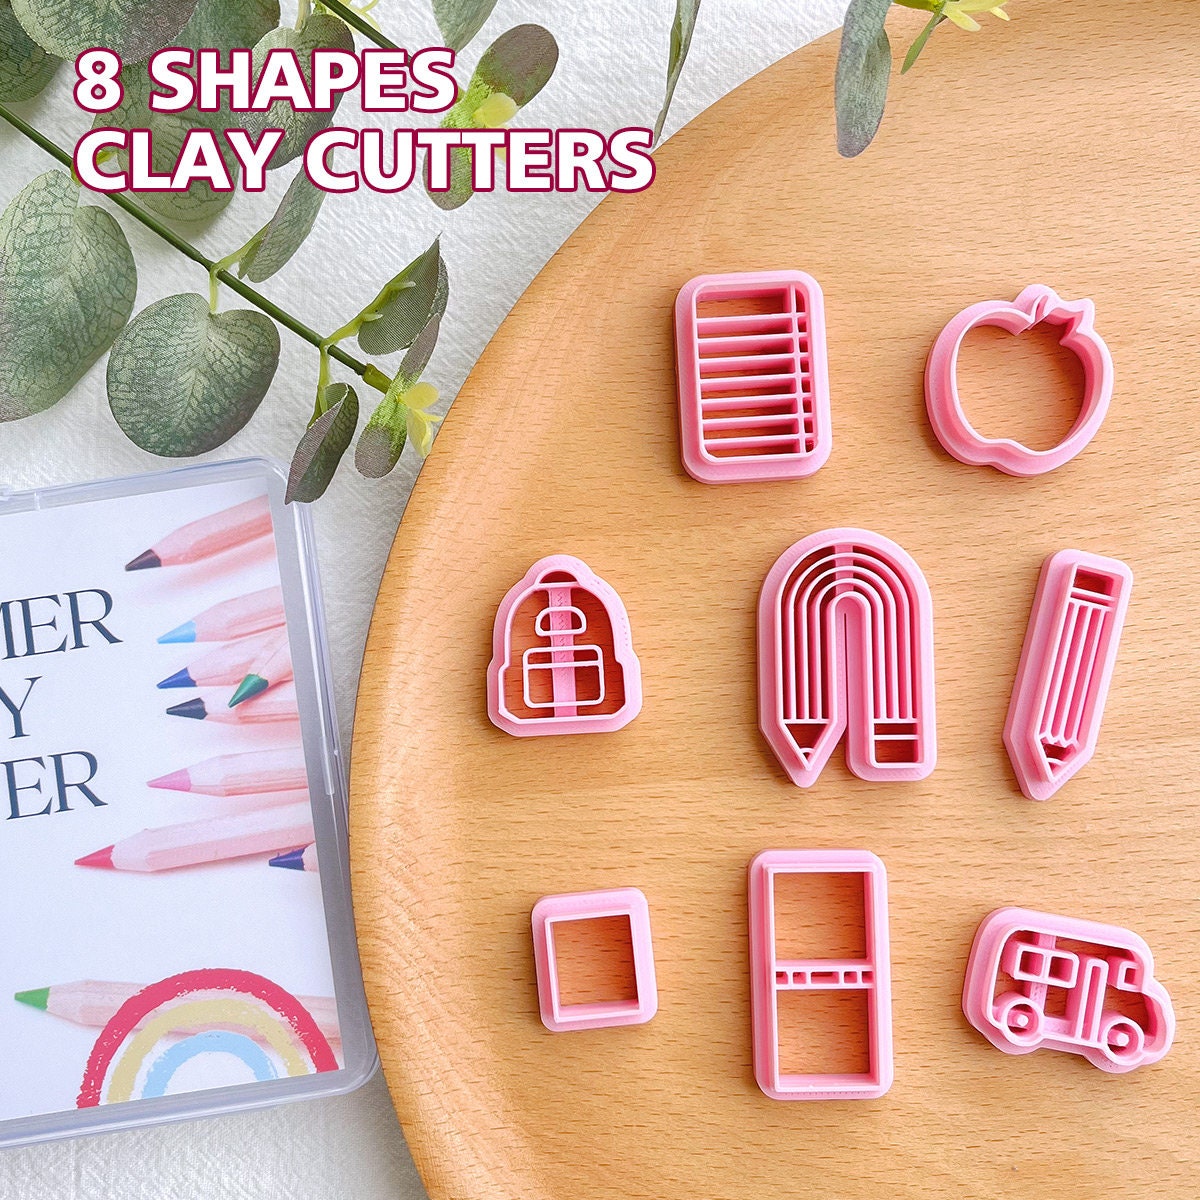 KEOKER Polymer Clay Cutters, School Clay Cutters, Polymer Clay Cutters for  Earrings Jewelry Making, 8 Shapes School Clay Earrings Cutters 